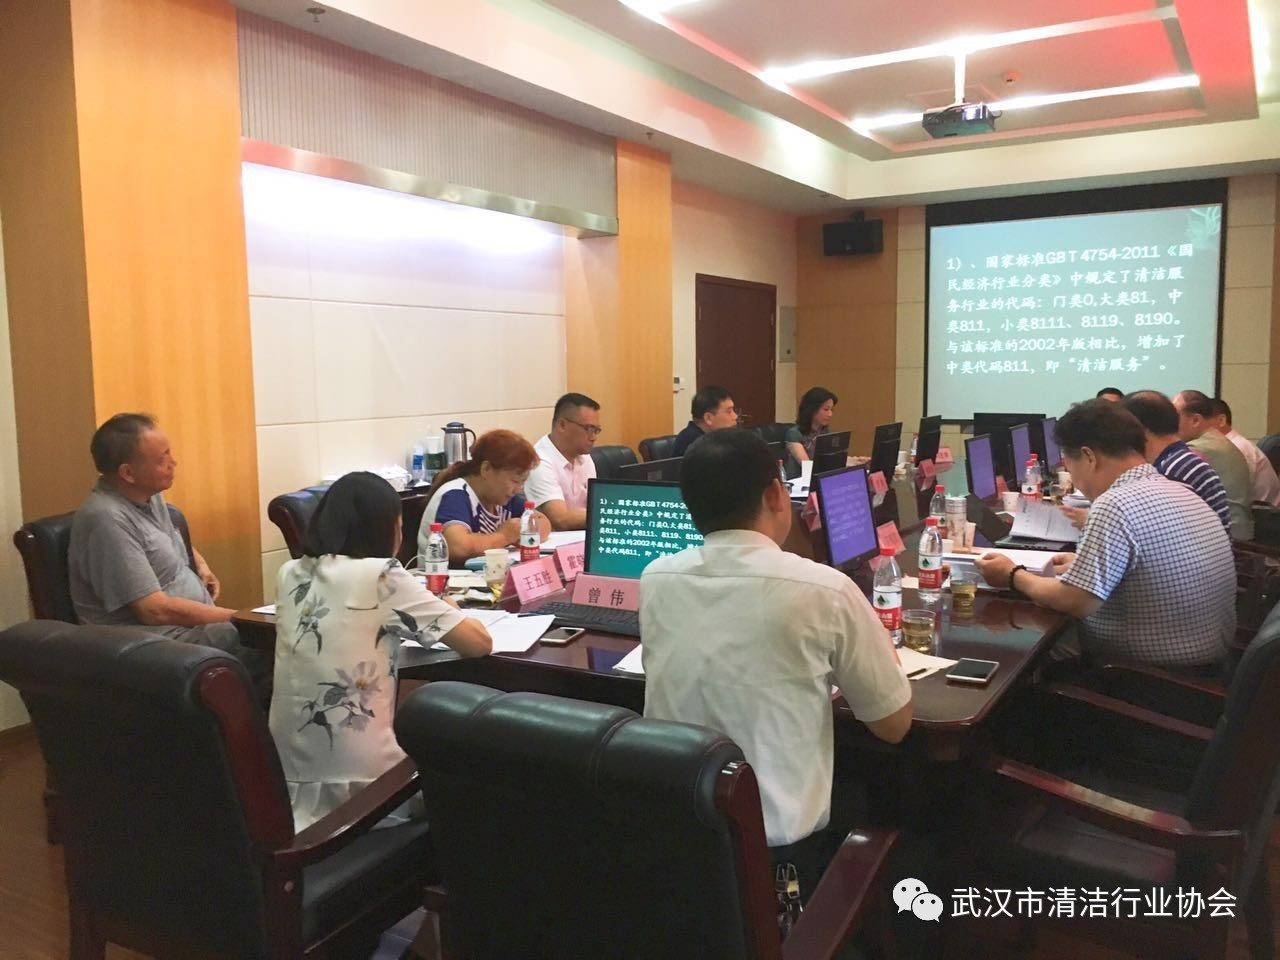 协会动态︱武汉市质量技术监督局立项、武汉市